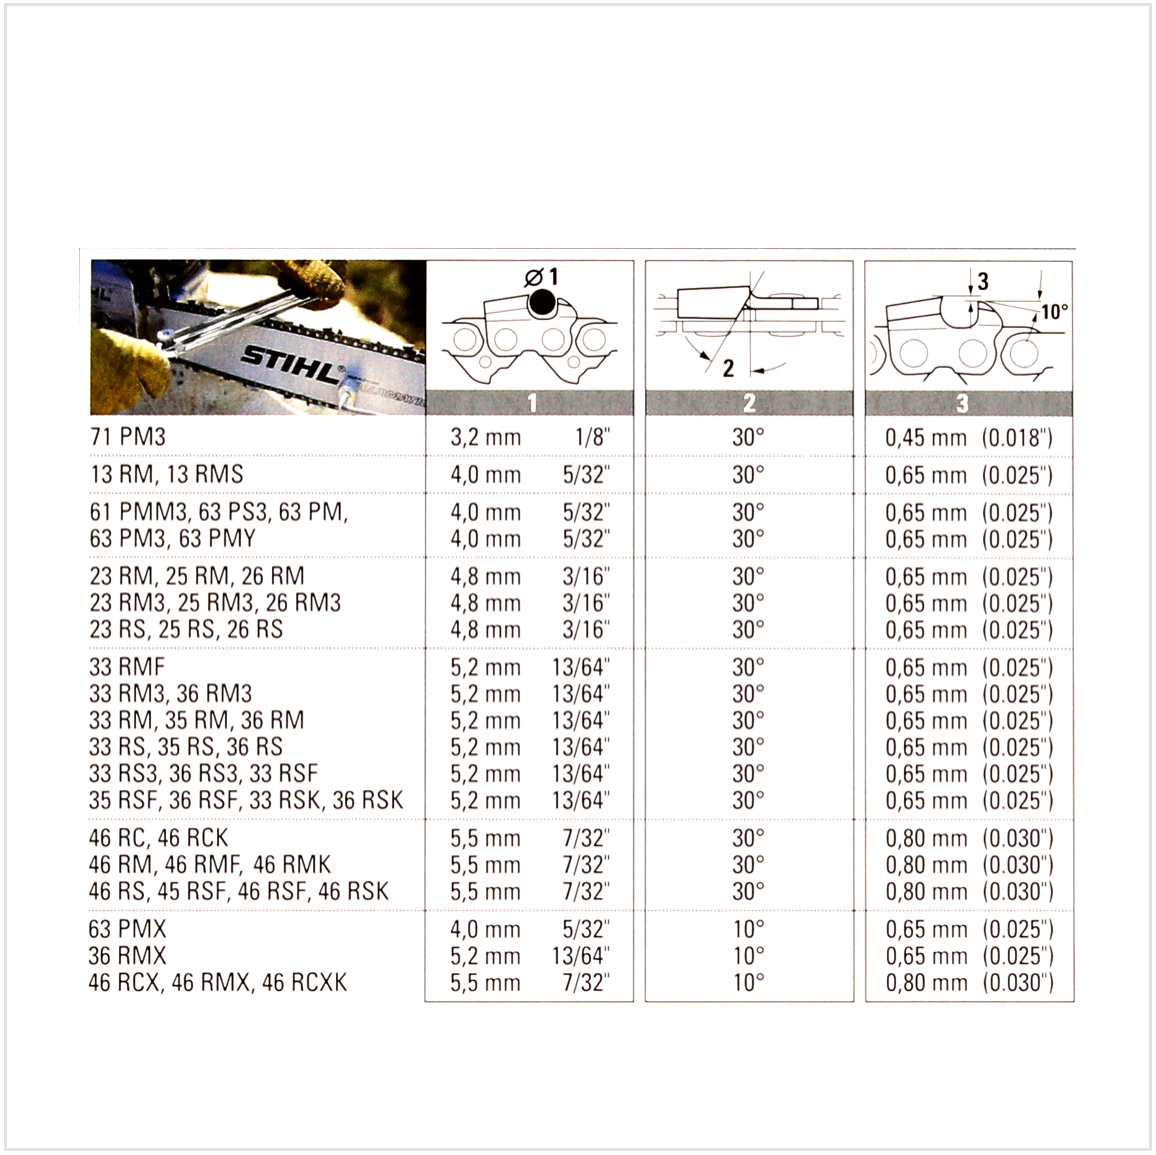 2x STIHL Oilomatic Sägekette Picco Micro Mini 3 (PMM3) Halbmeißel 3/8"P  1,1mm 35 cm ( 3610 000 0050 ) - Toolbrothers